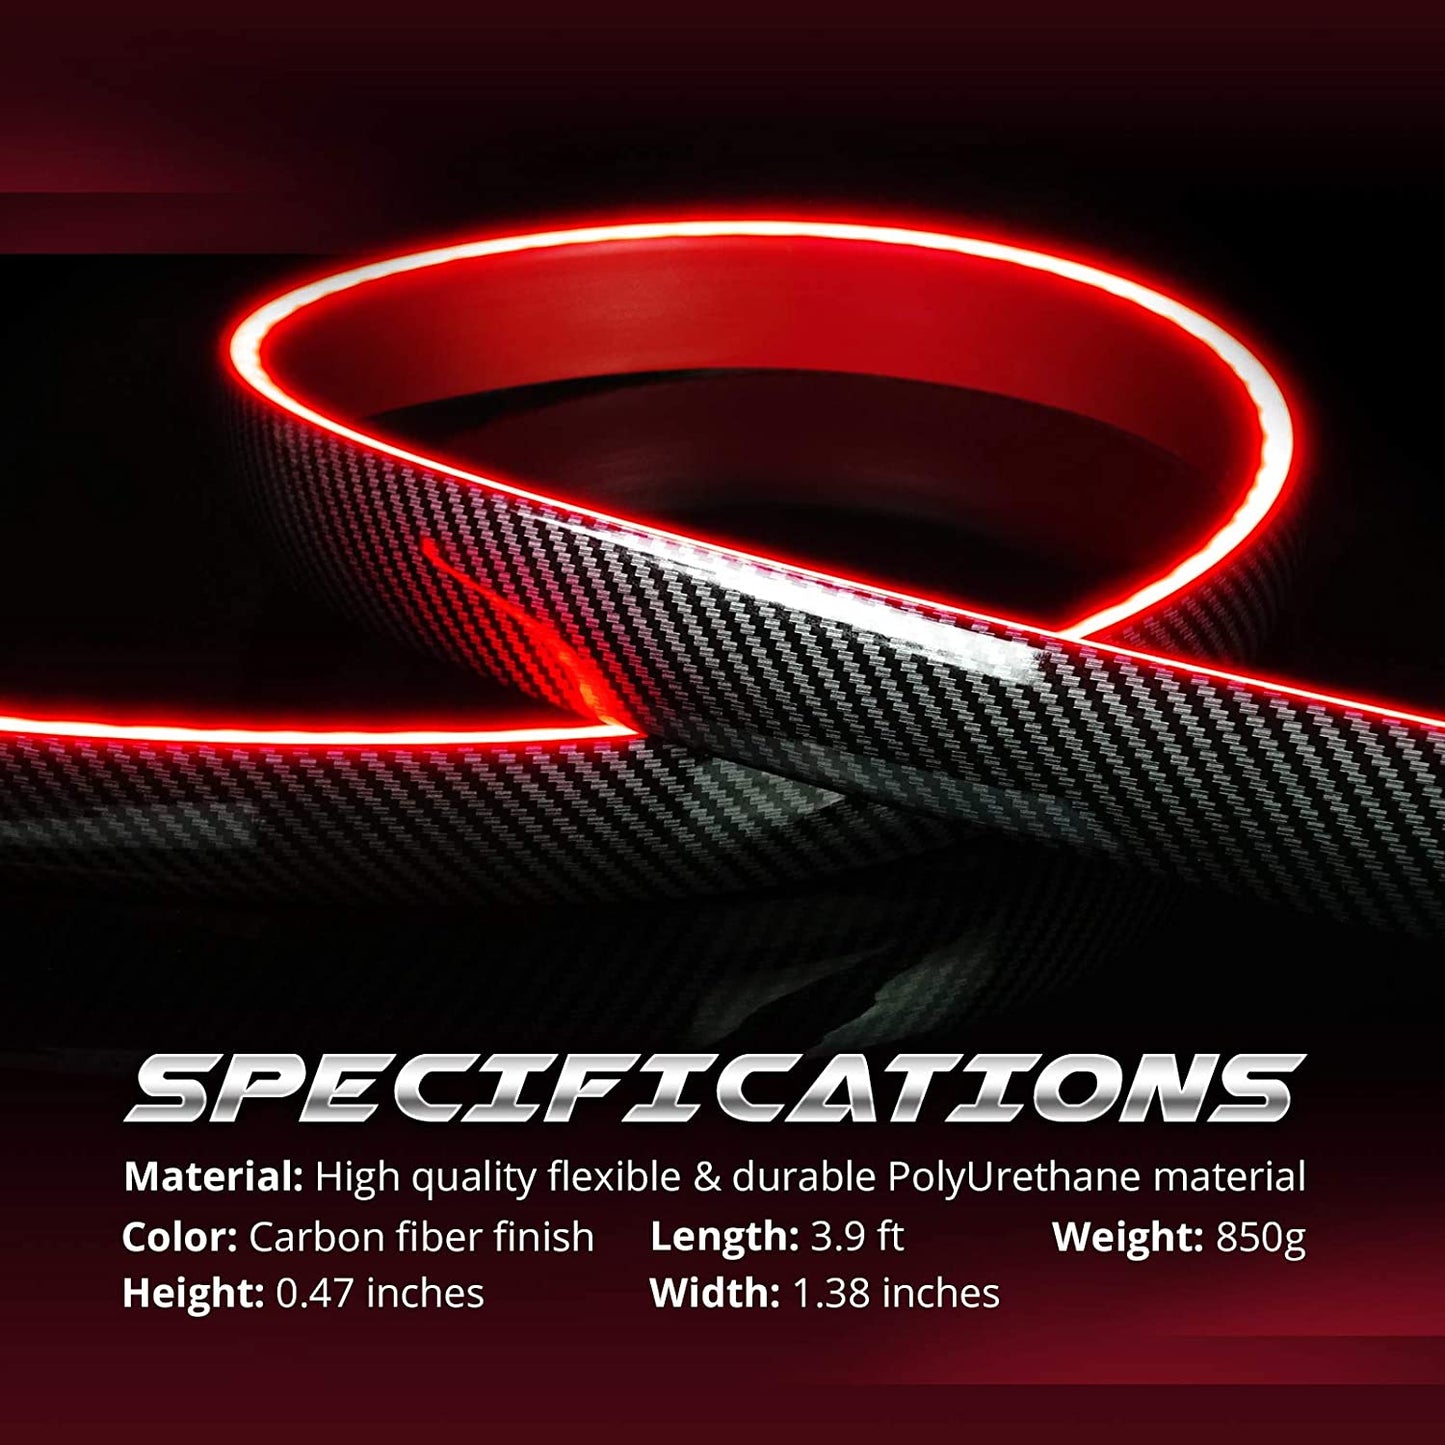 OPT7 Universal LED Spoiler Rear Spoiler Lip Kit (3.9ft) for Car Trunk,